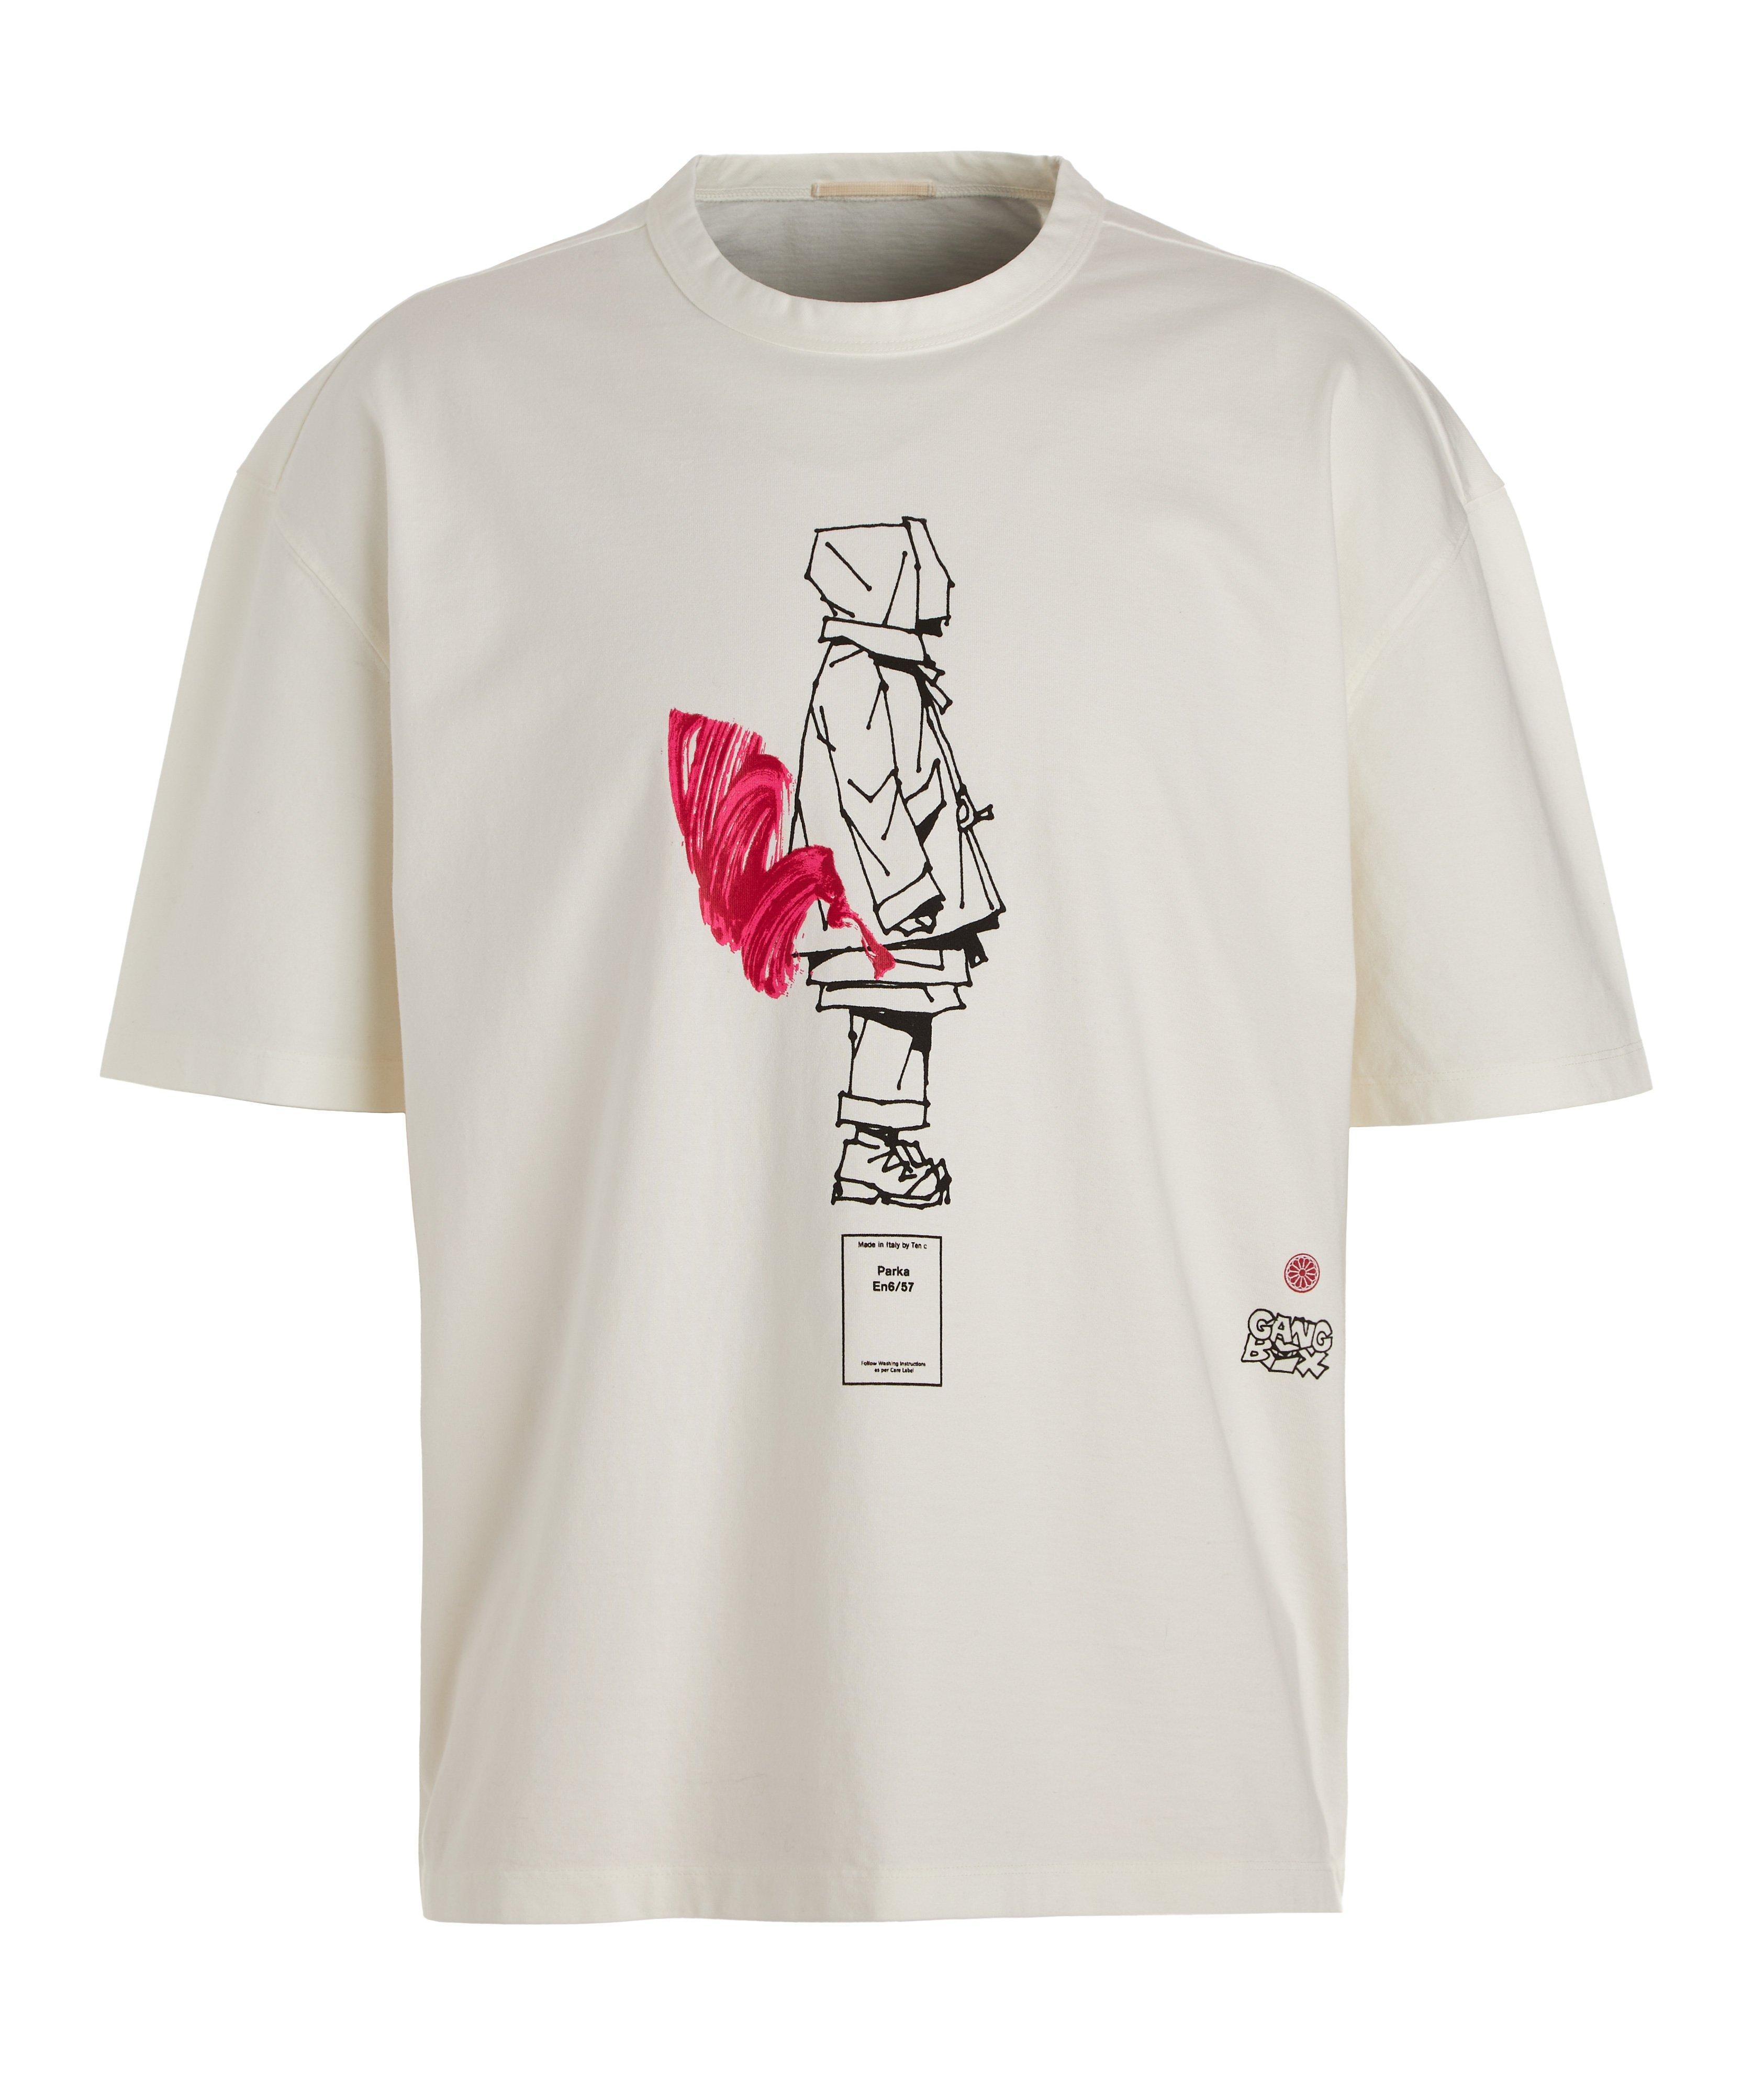 T-shirt en coton avec illustration, collection Gang Box image 0